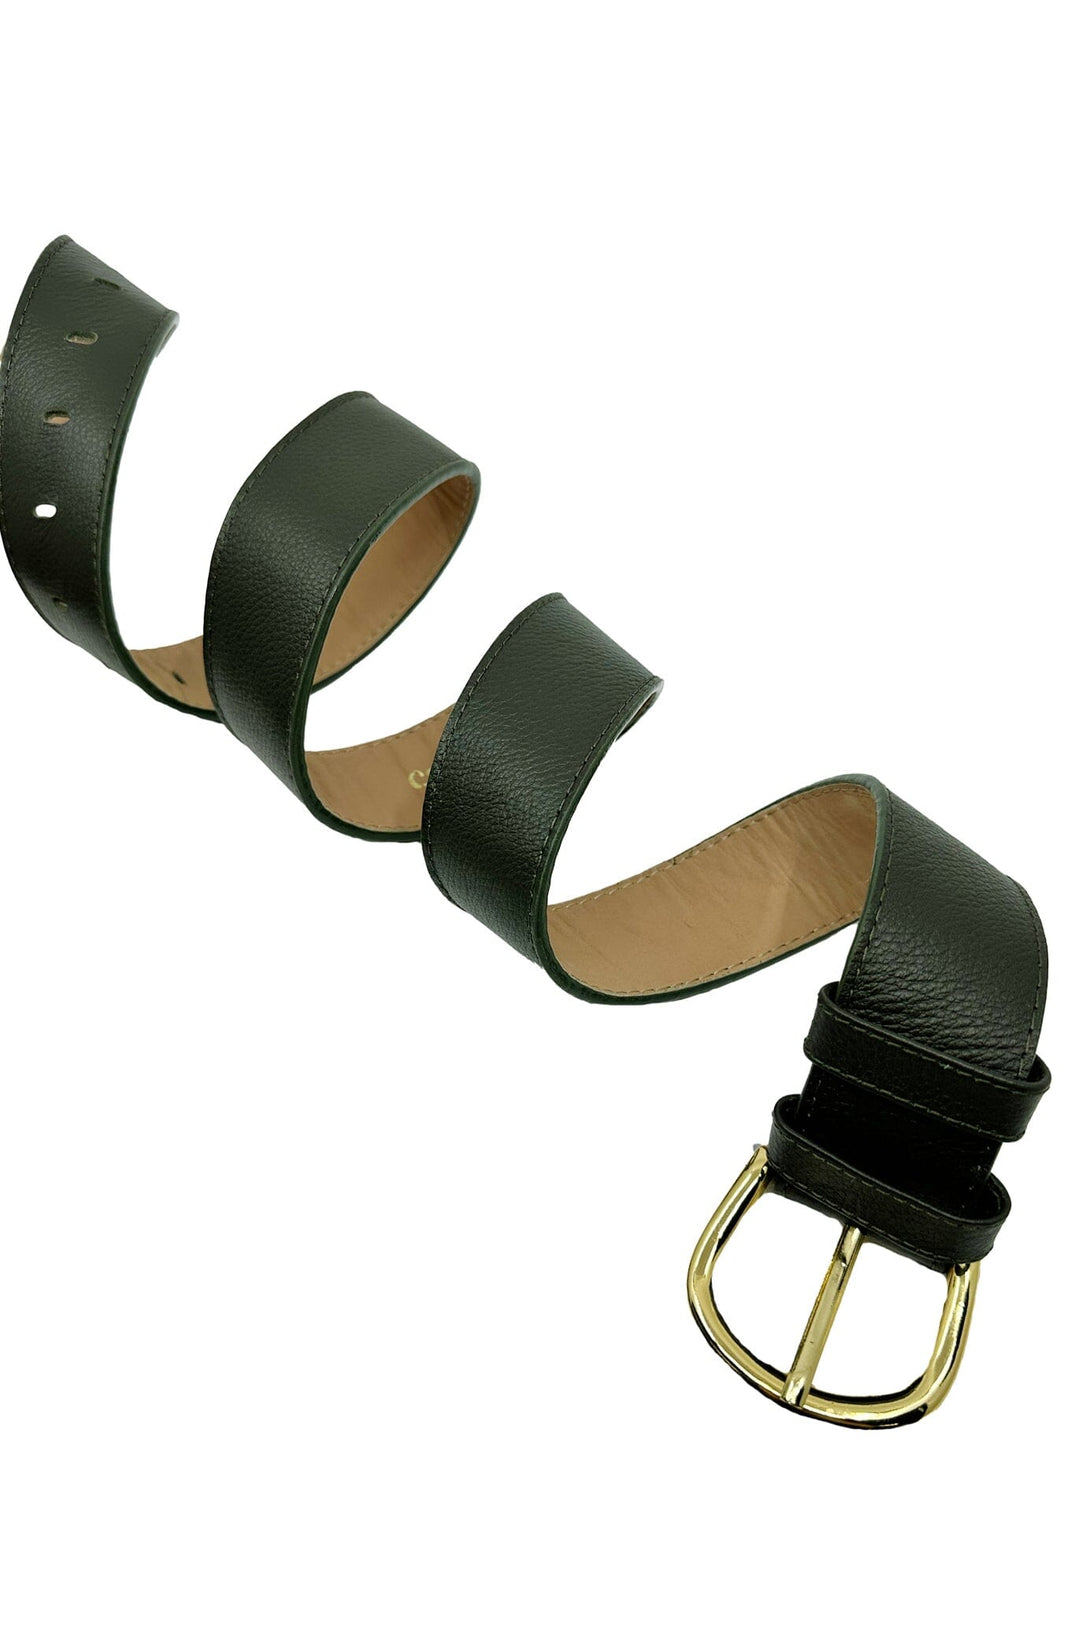 Jeans Belt Olive Soft Leather Belts